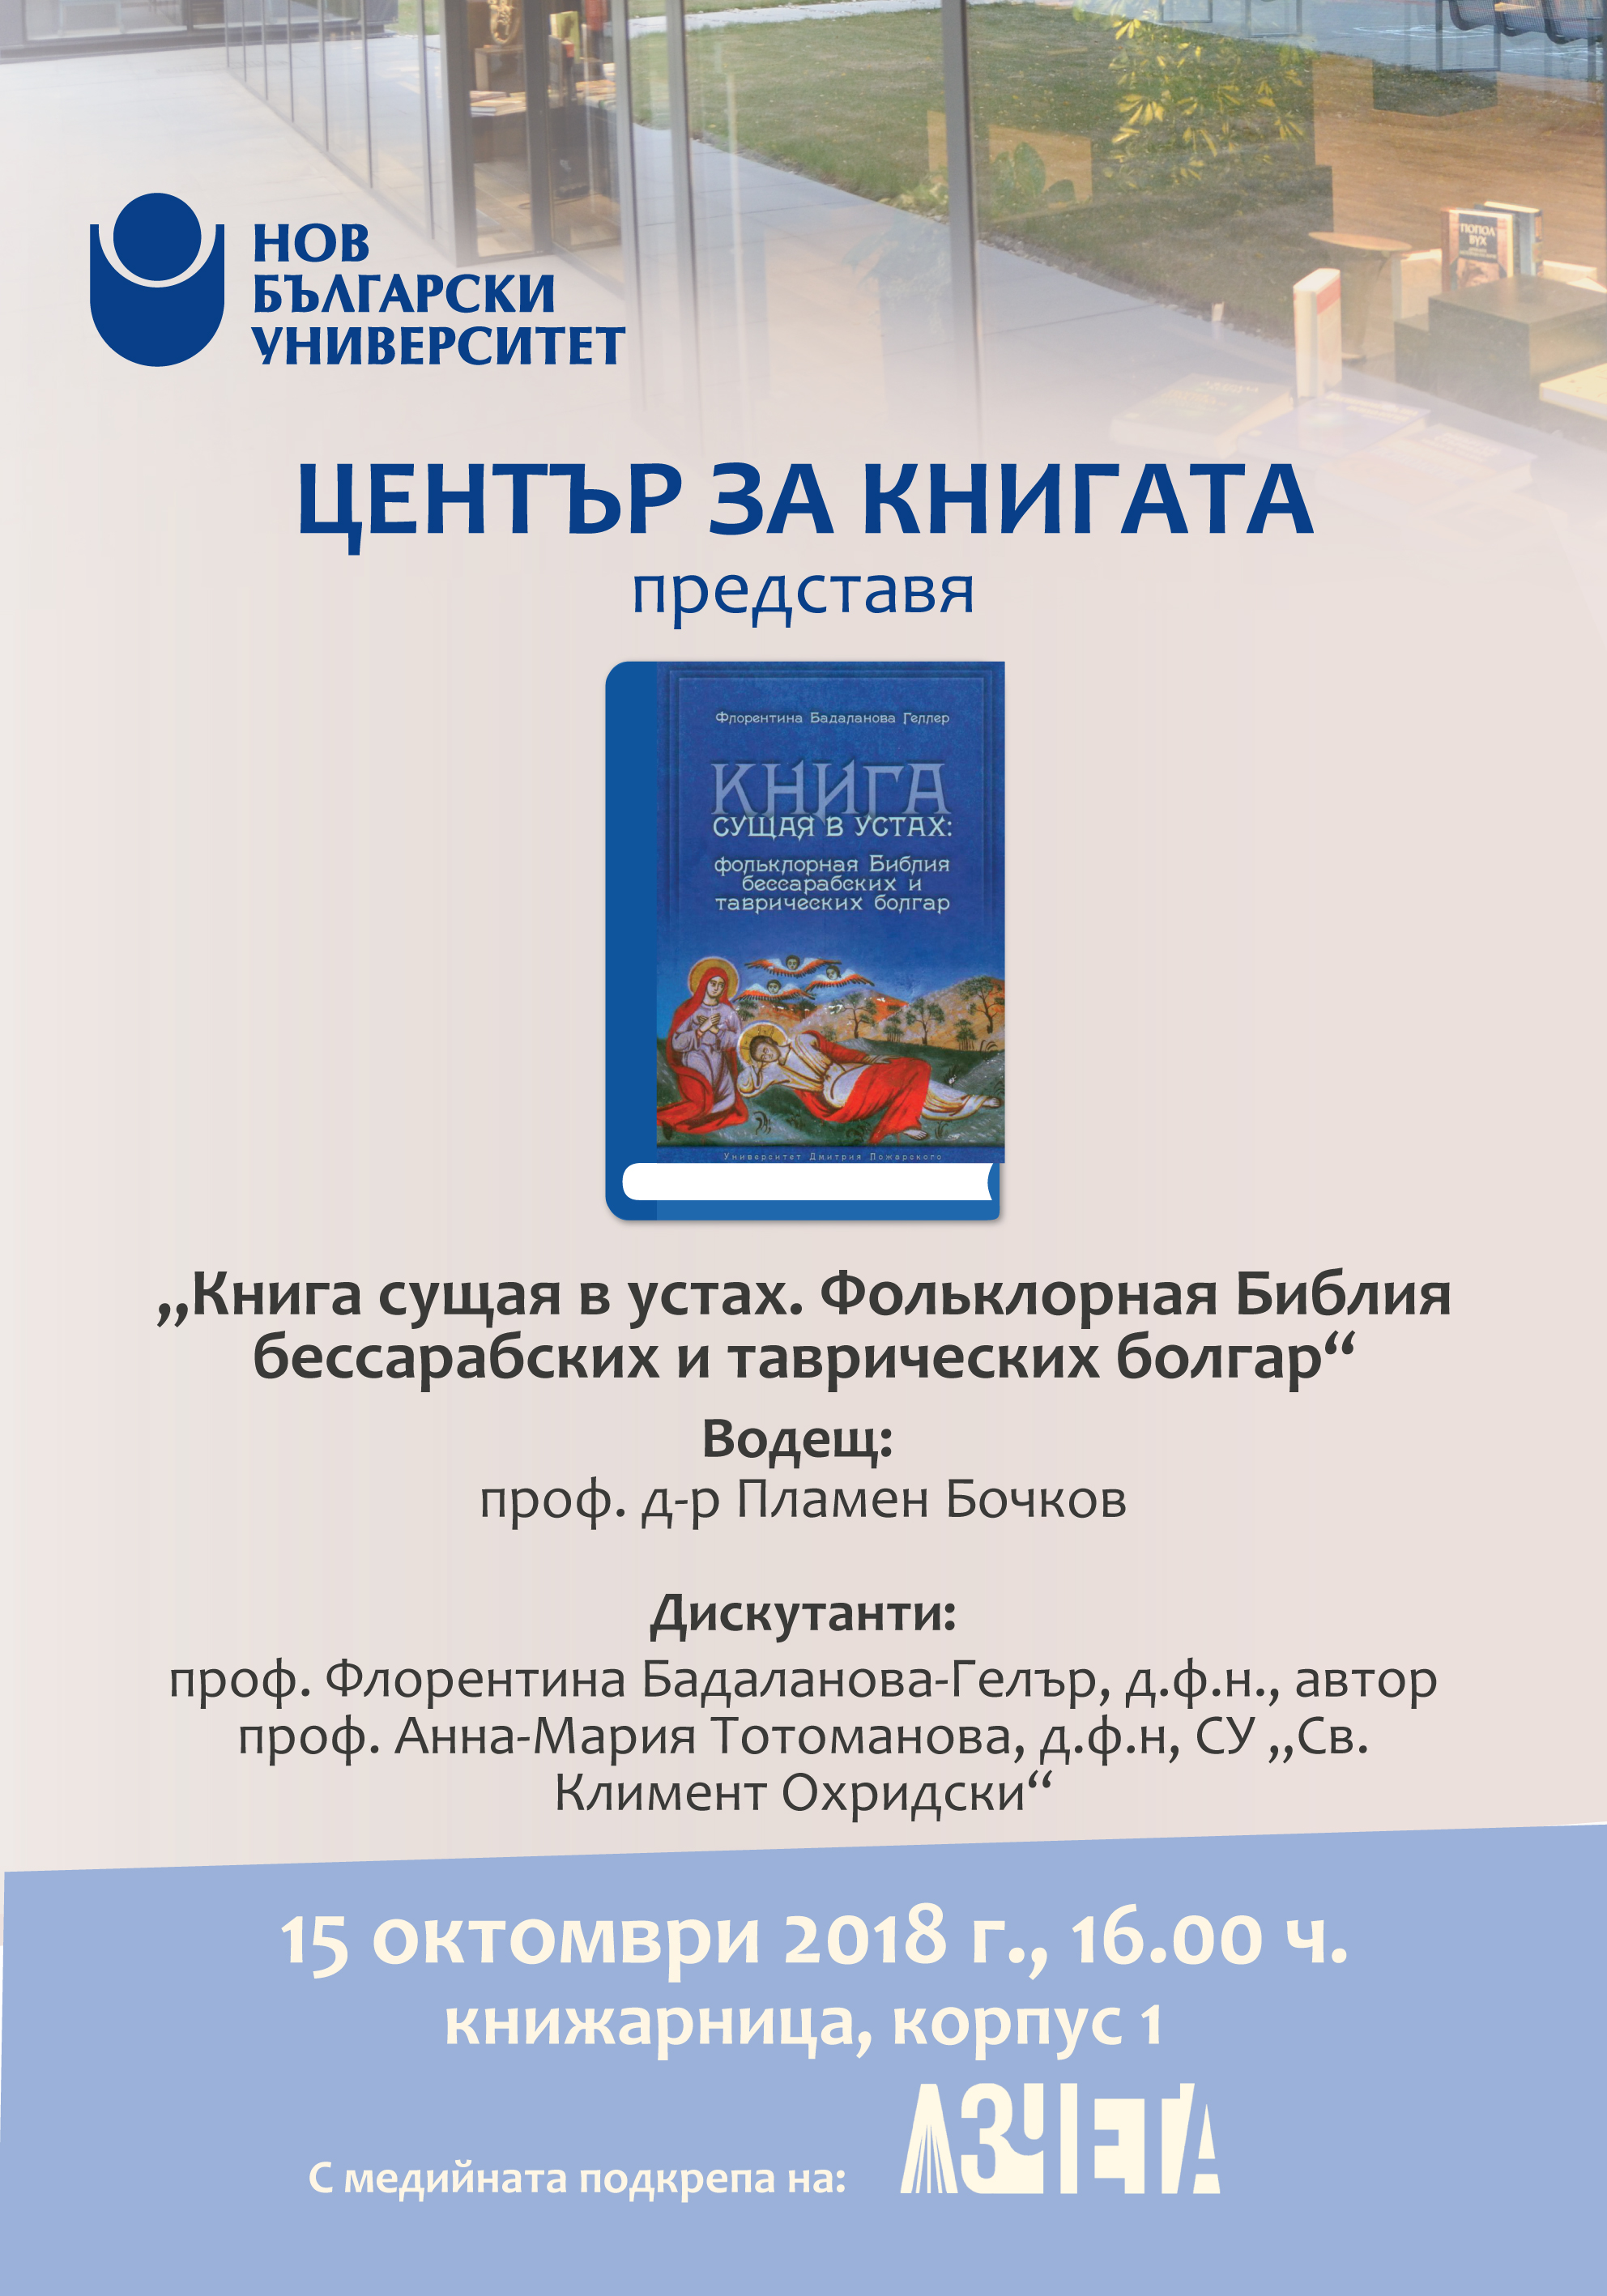 Представяне на „Книга сущая в устах. Фольклорная Библия бессарабских и таврических болгар“